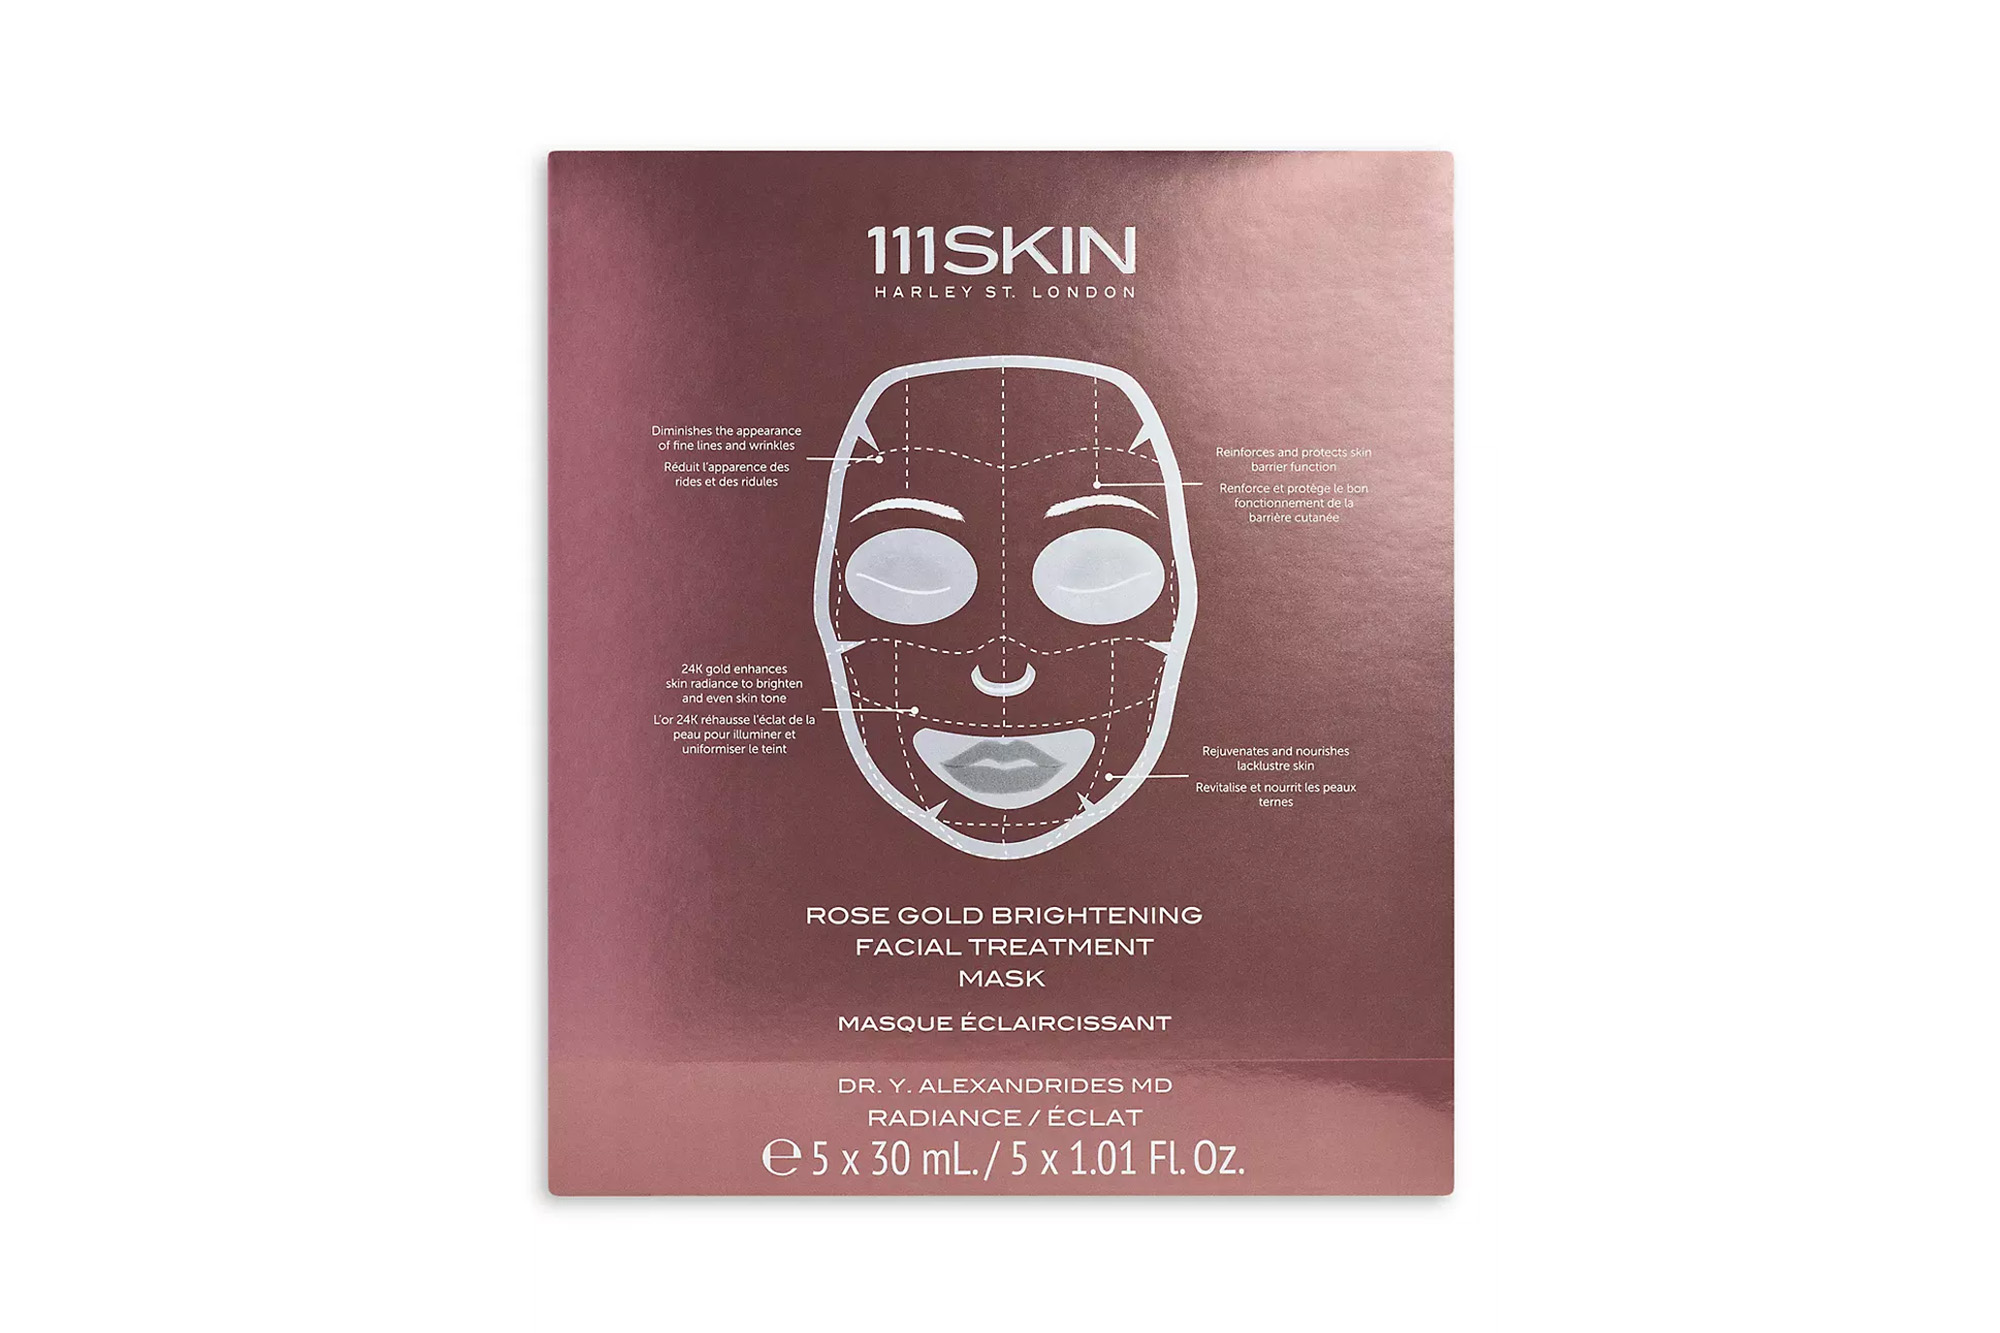 A pack of 111 Skin face masks